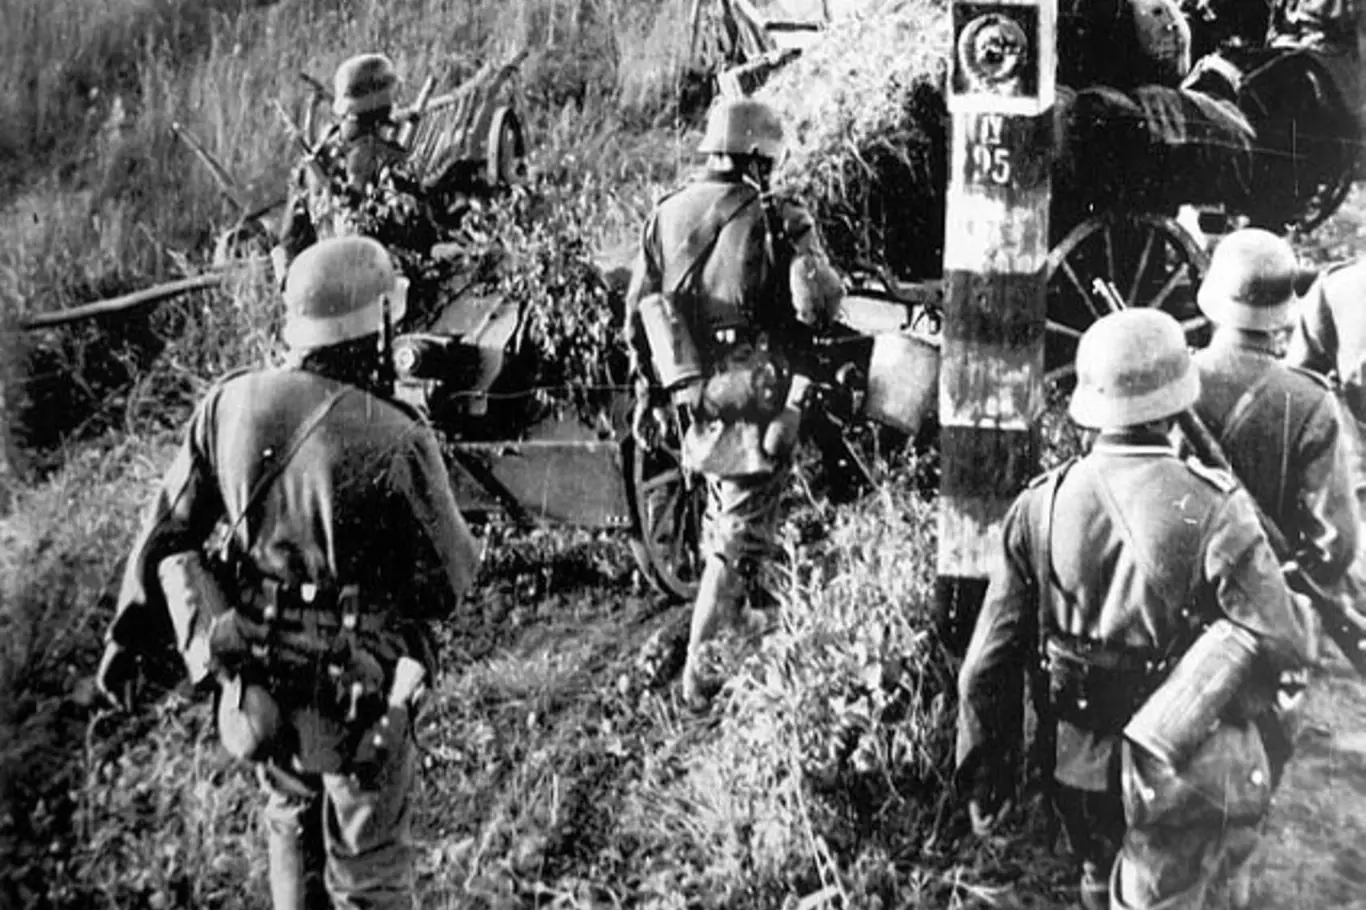 Německá vojska překračují německo-sovětskou hranici, operace Barbarossa začíná.